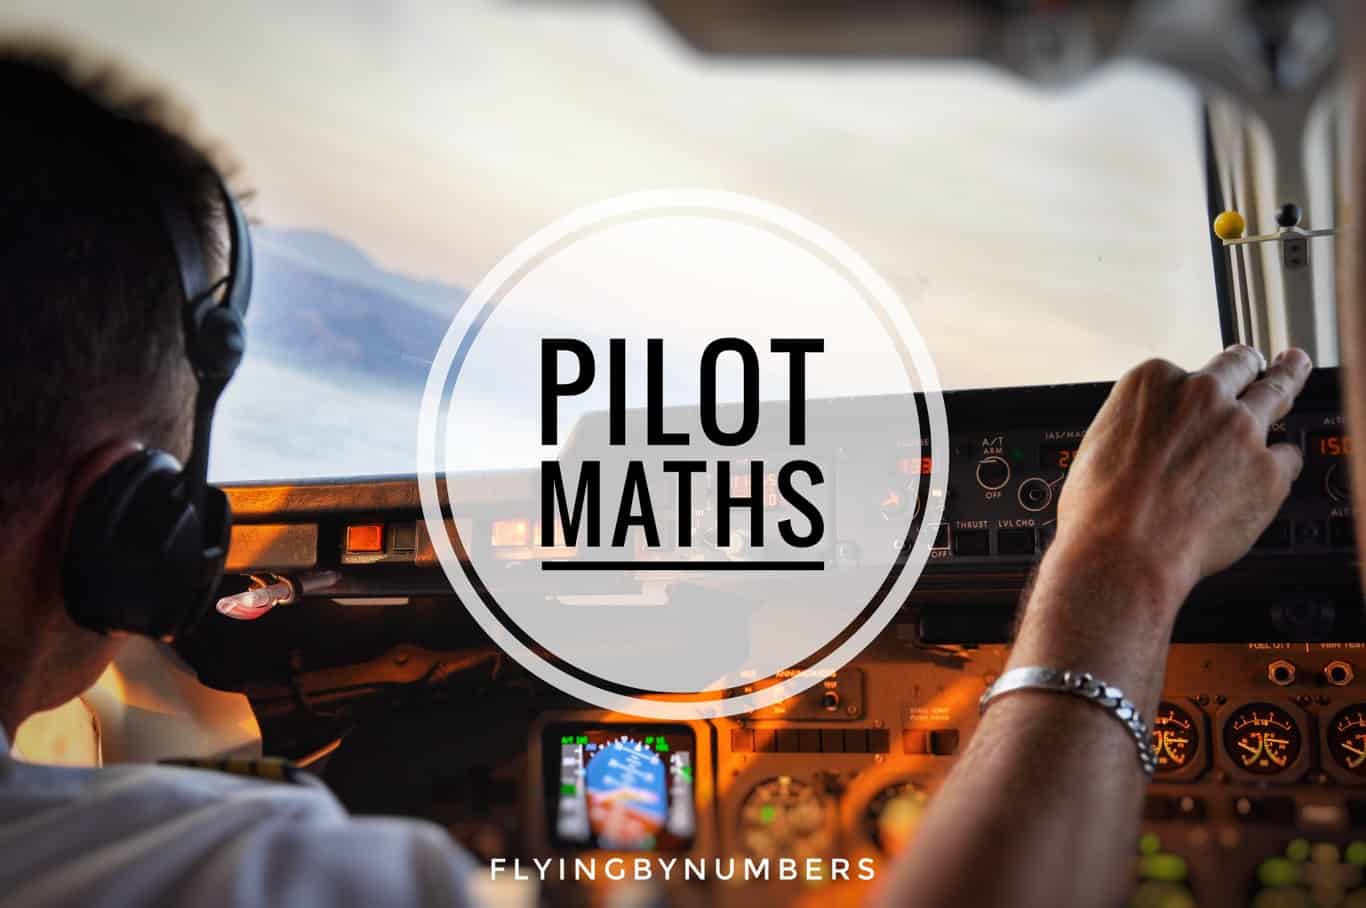 Pilot maths